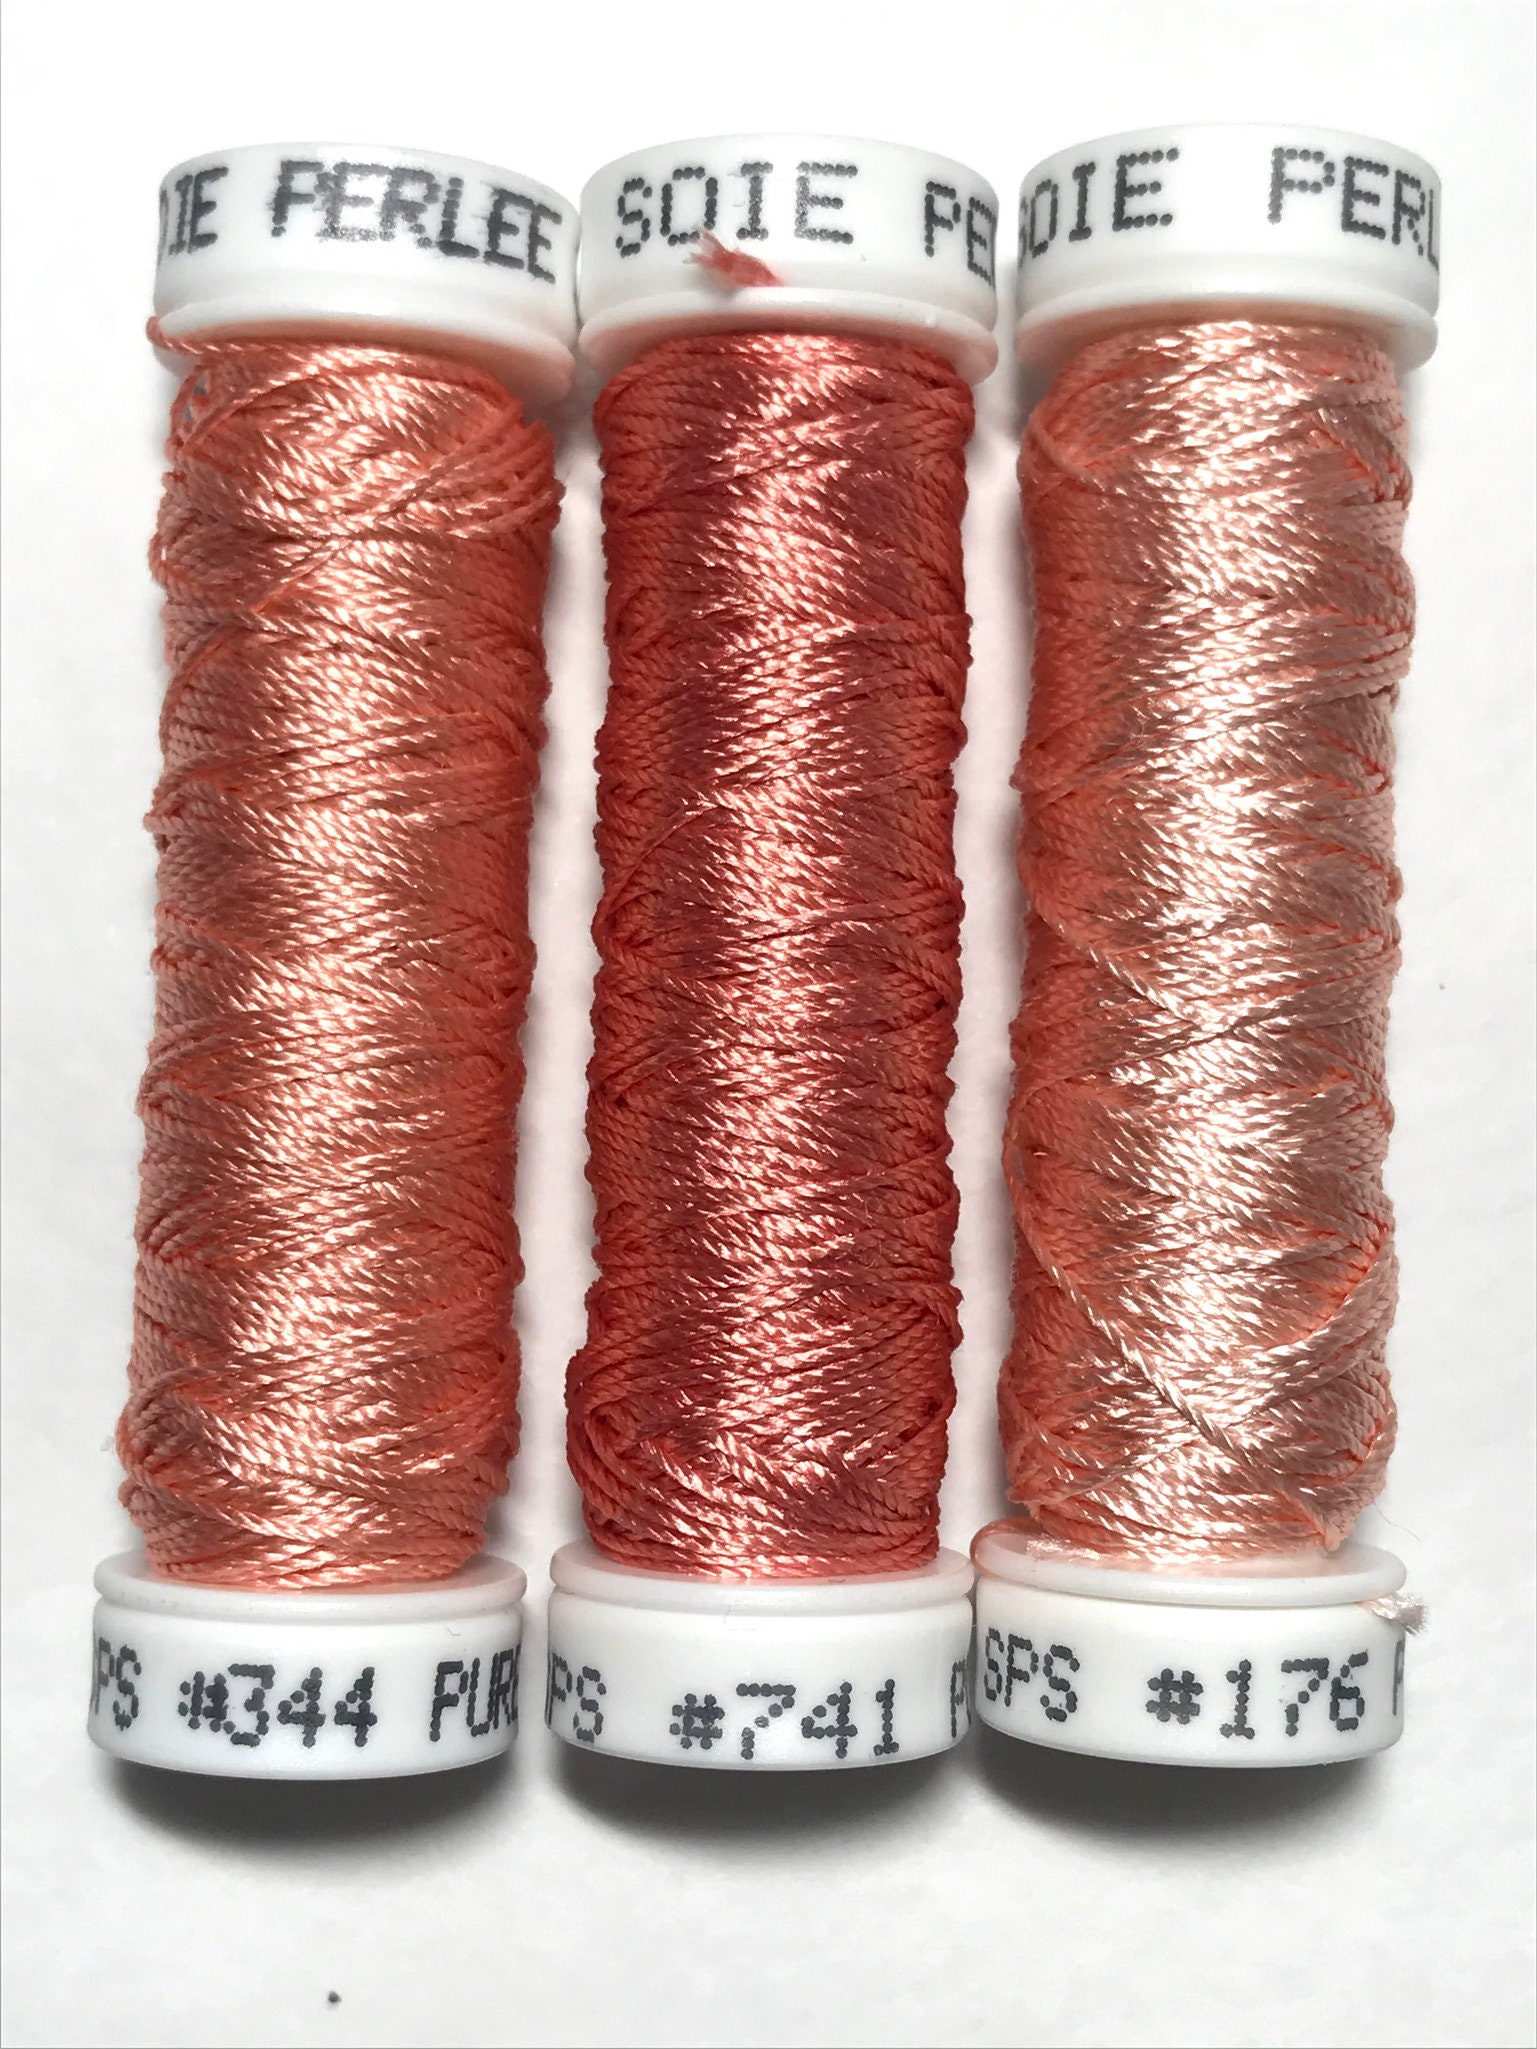 Gutermann Sew-All Thread 500m/547y IVORY #800 (1 SPOOL)